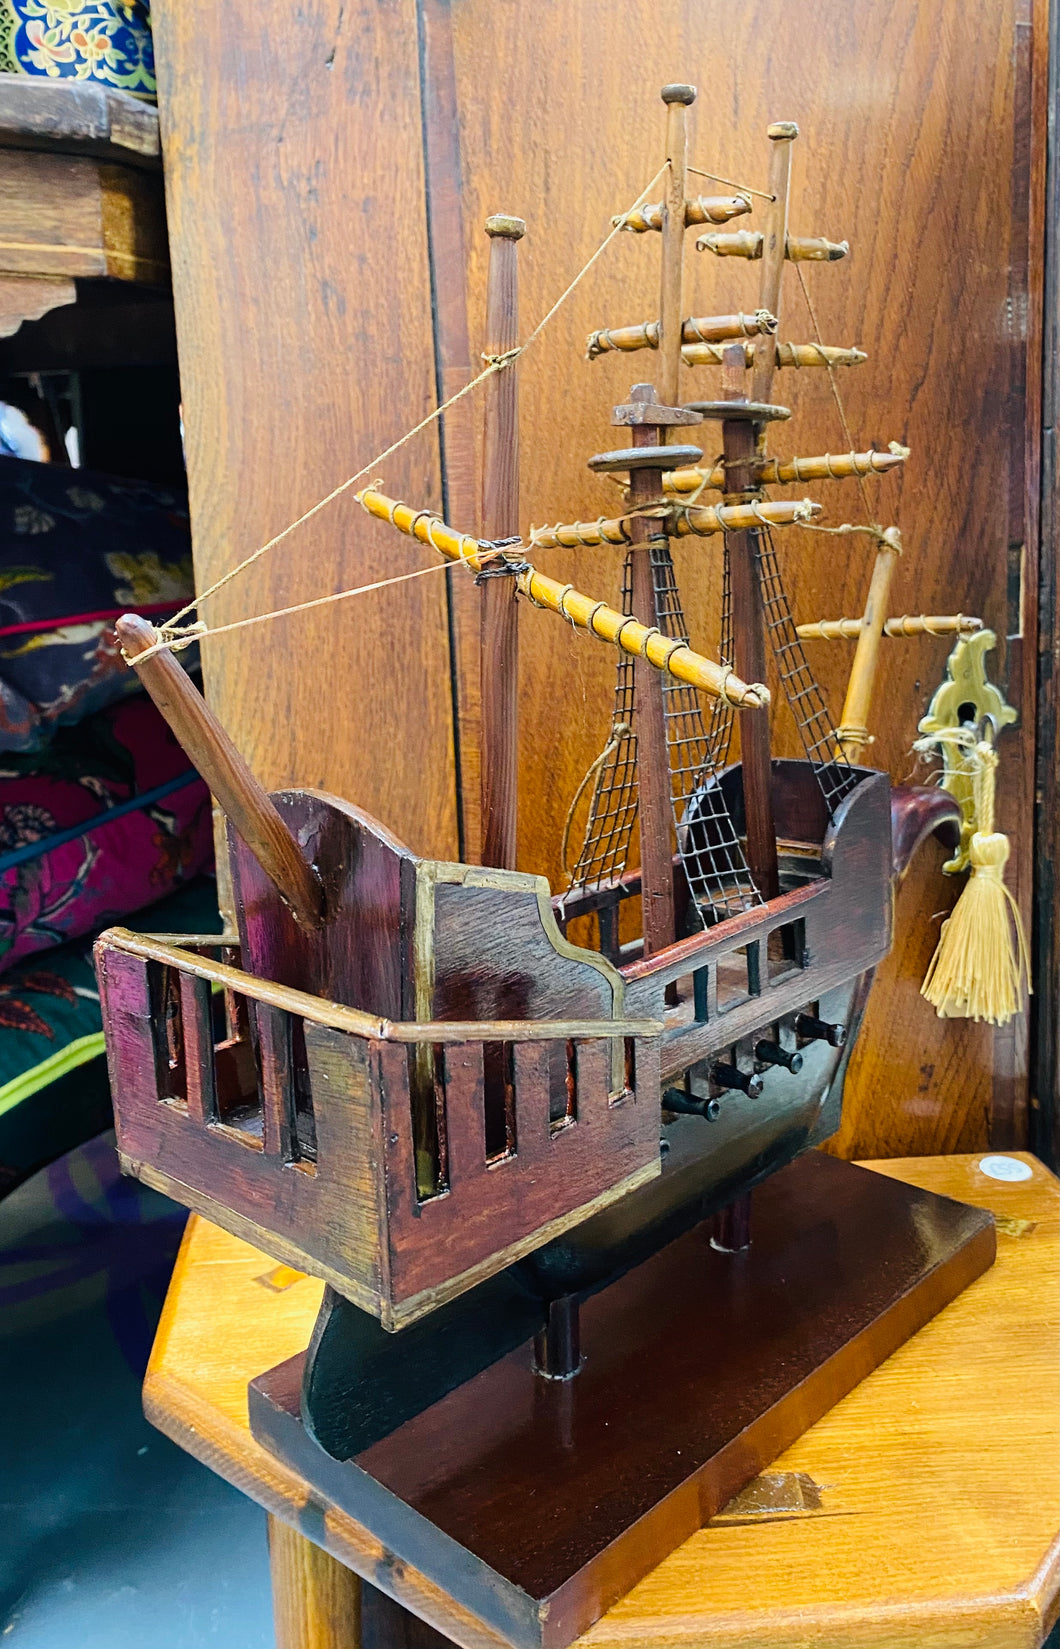 Llong pren hynafol ar stand wedi ei gwneud â llaw / Hand made Antique wooden ship on a stand